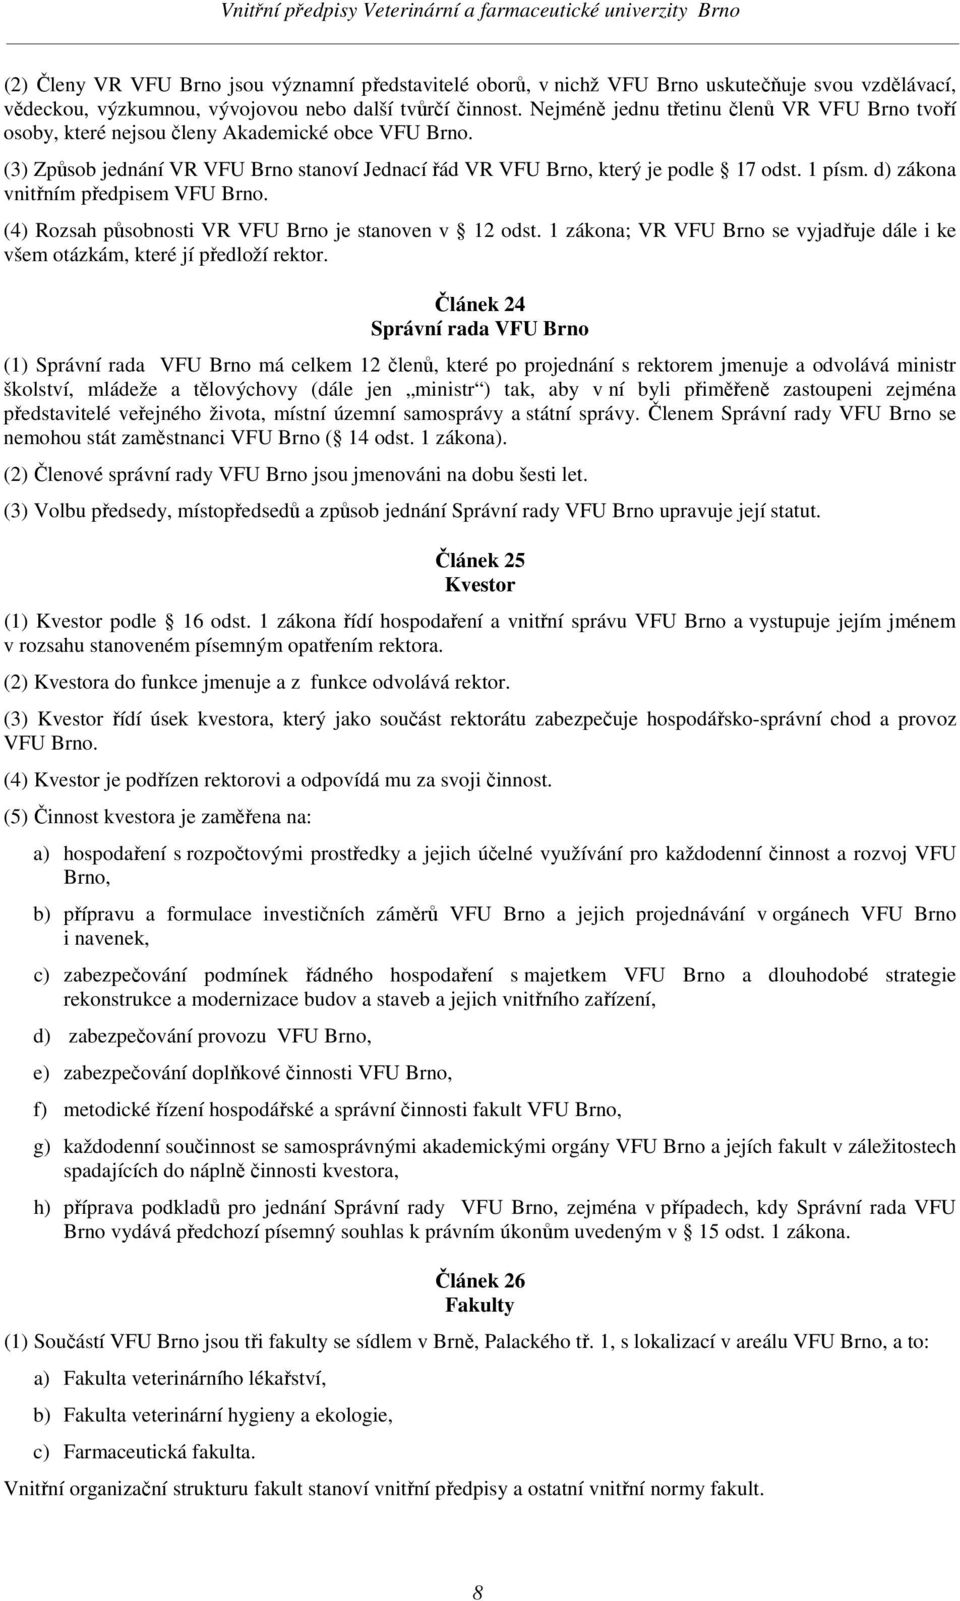 d) zákona vnitřním předpisem VFU Brno. (4) Rozsah působnosti VR VFU Brno je stanoven v 12 odst. 1 zákona; VR VFU Brno se vyjadřuje dále i ke všem otázkám, které jí předloží rektor.